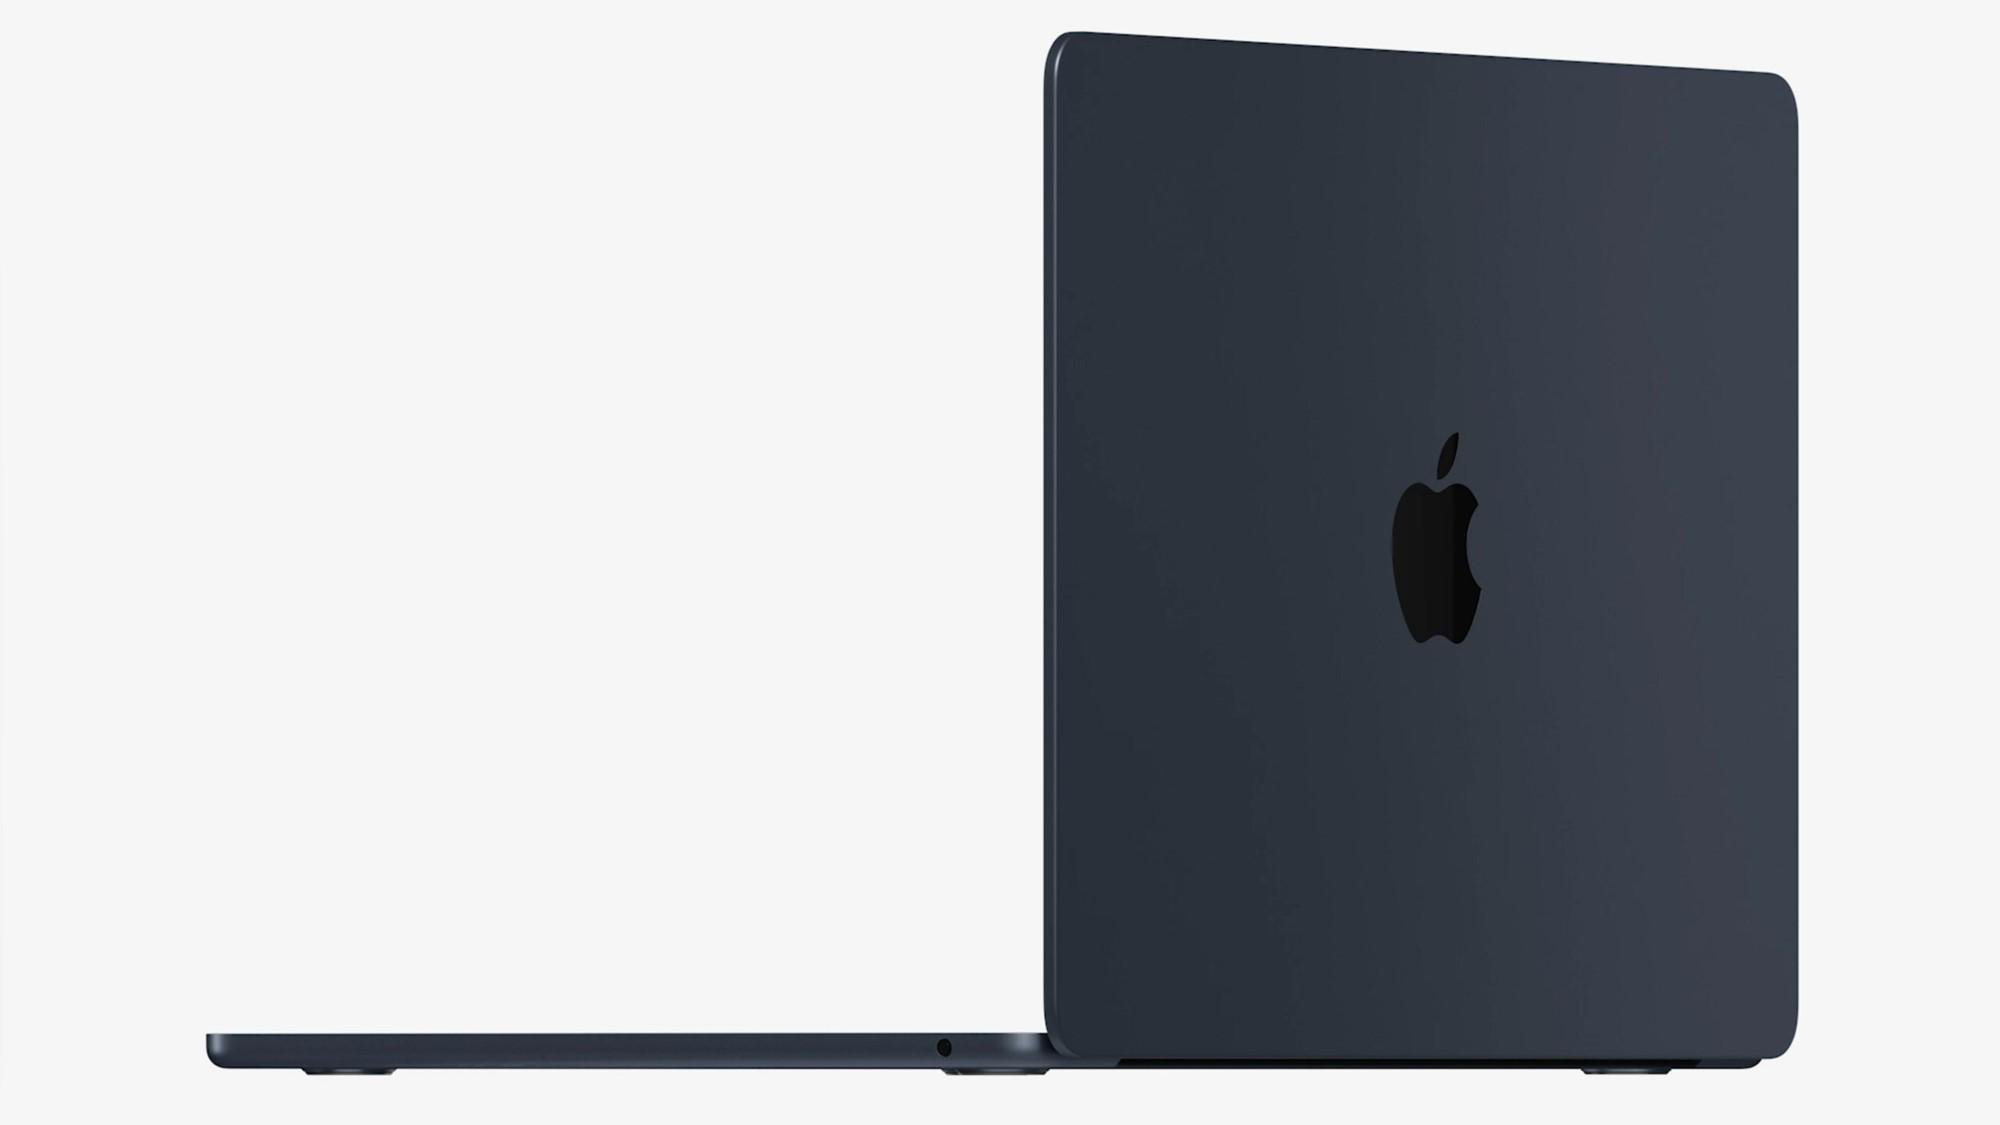 Design aprimorado e quatro cores para a nova linha do MacBook Air com M2.